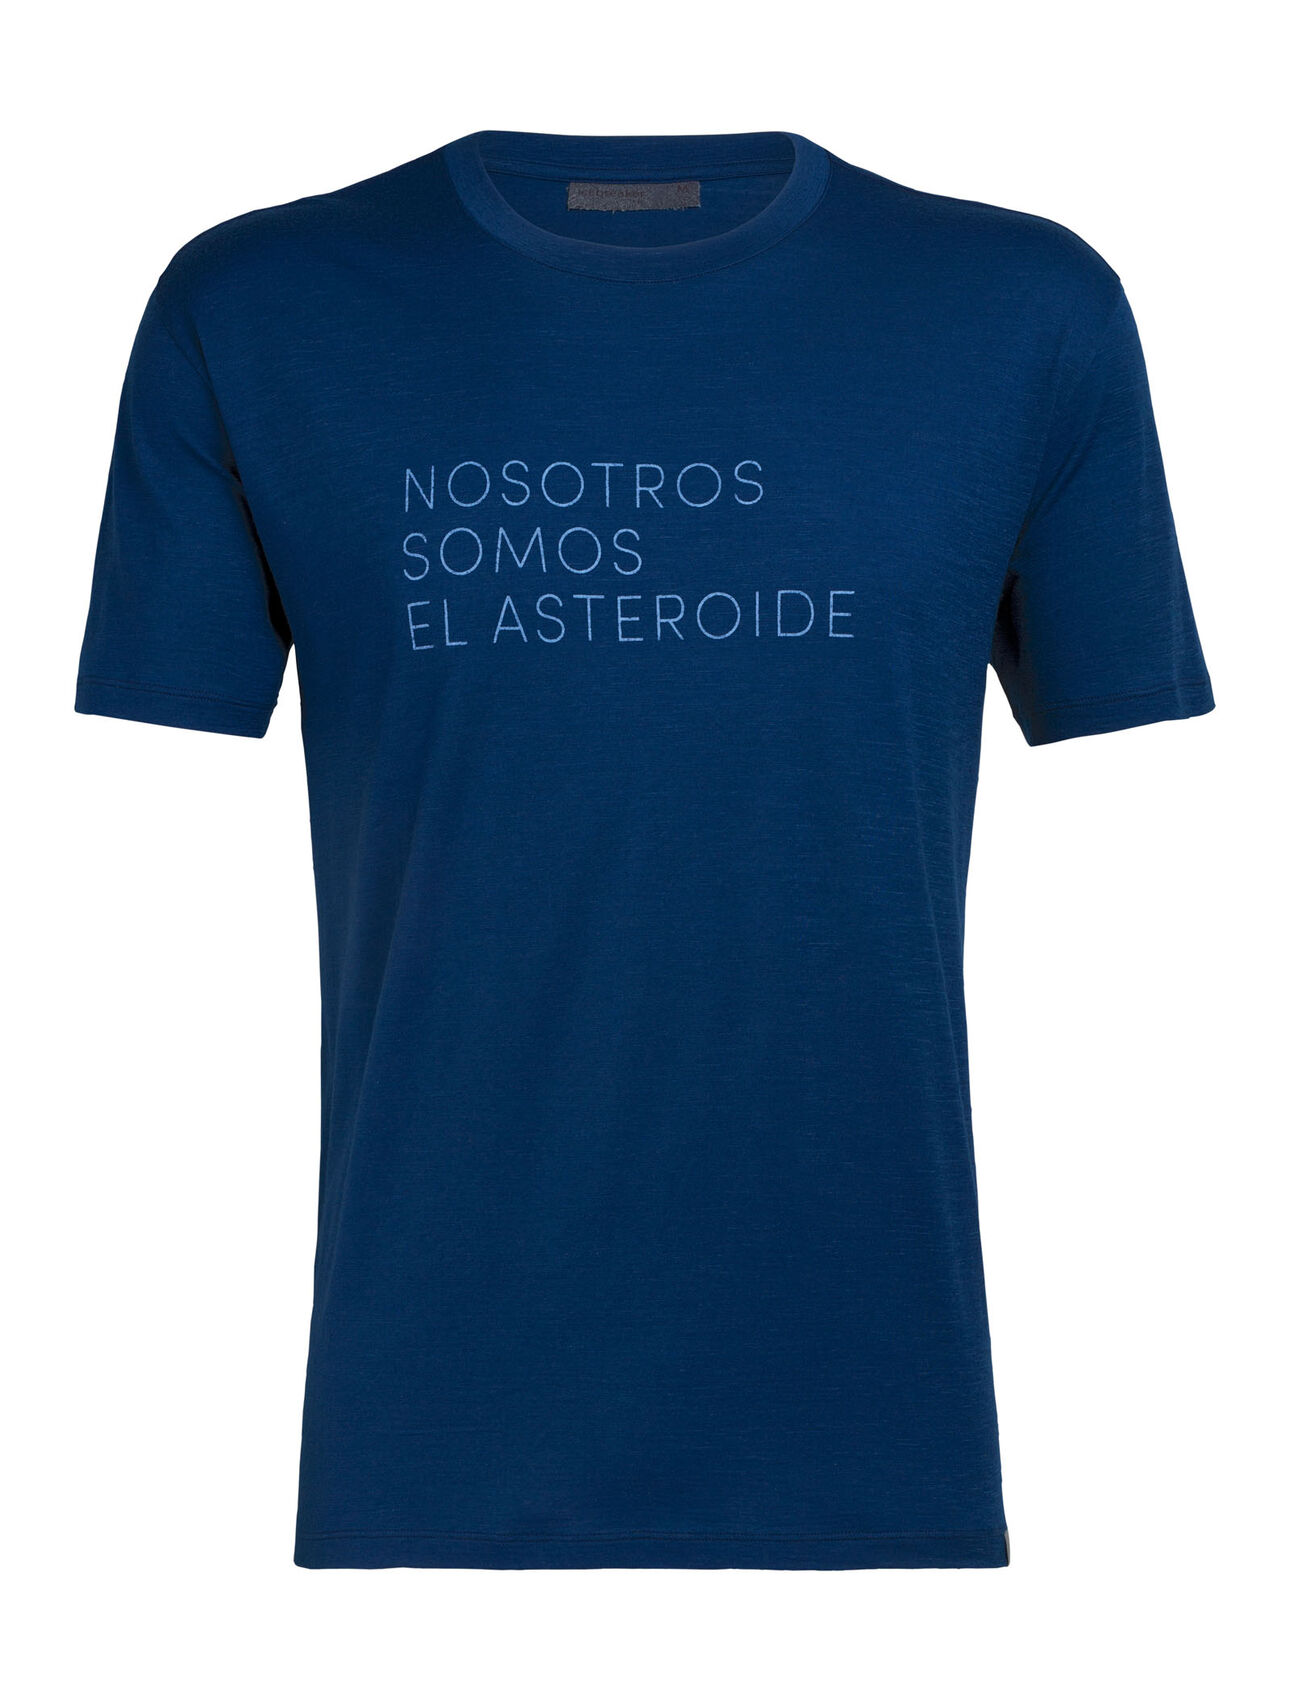 nature dye Tech Lite T-shirt Asteroid Spanish met korte mouwen en ronde hals van merinowol